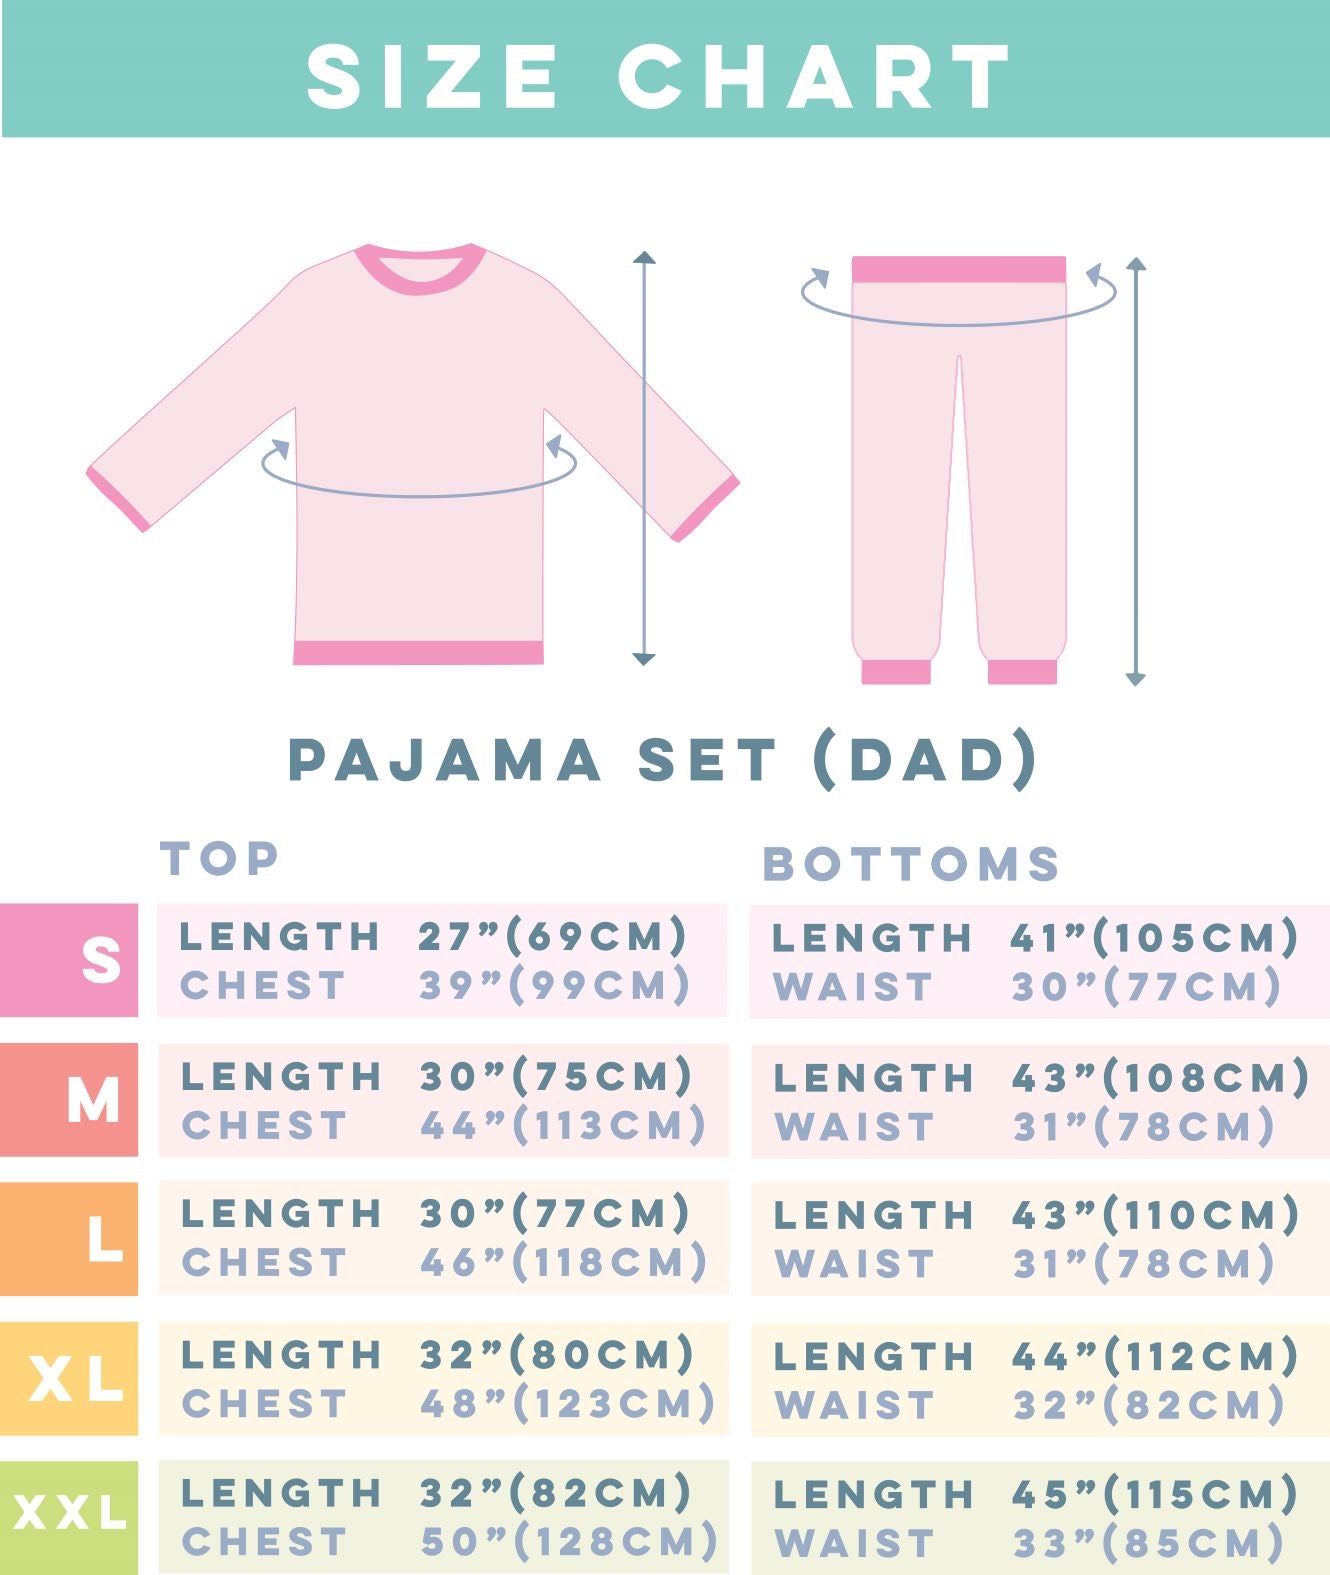 Pajamas - Deck the Paws (Men's)